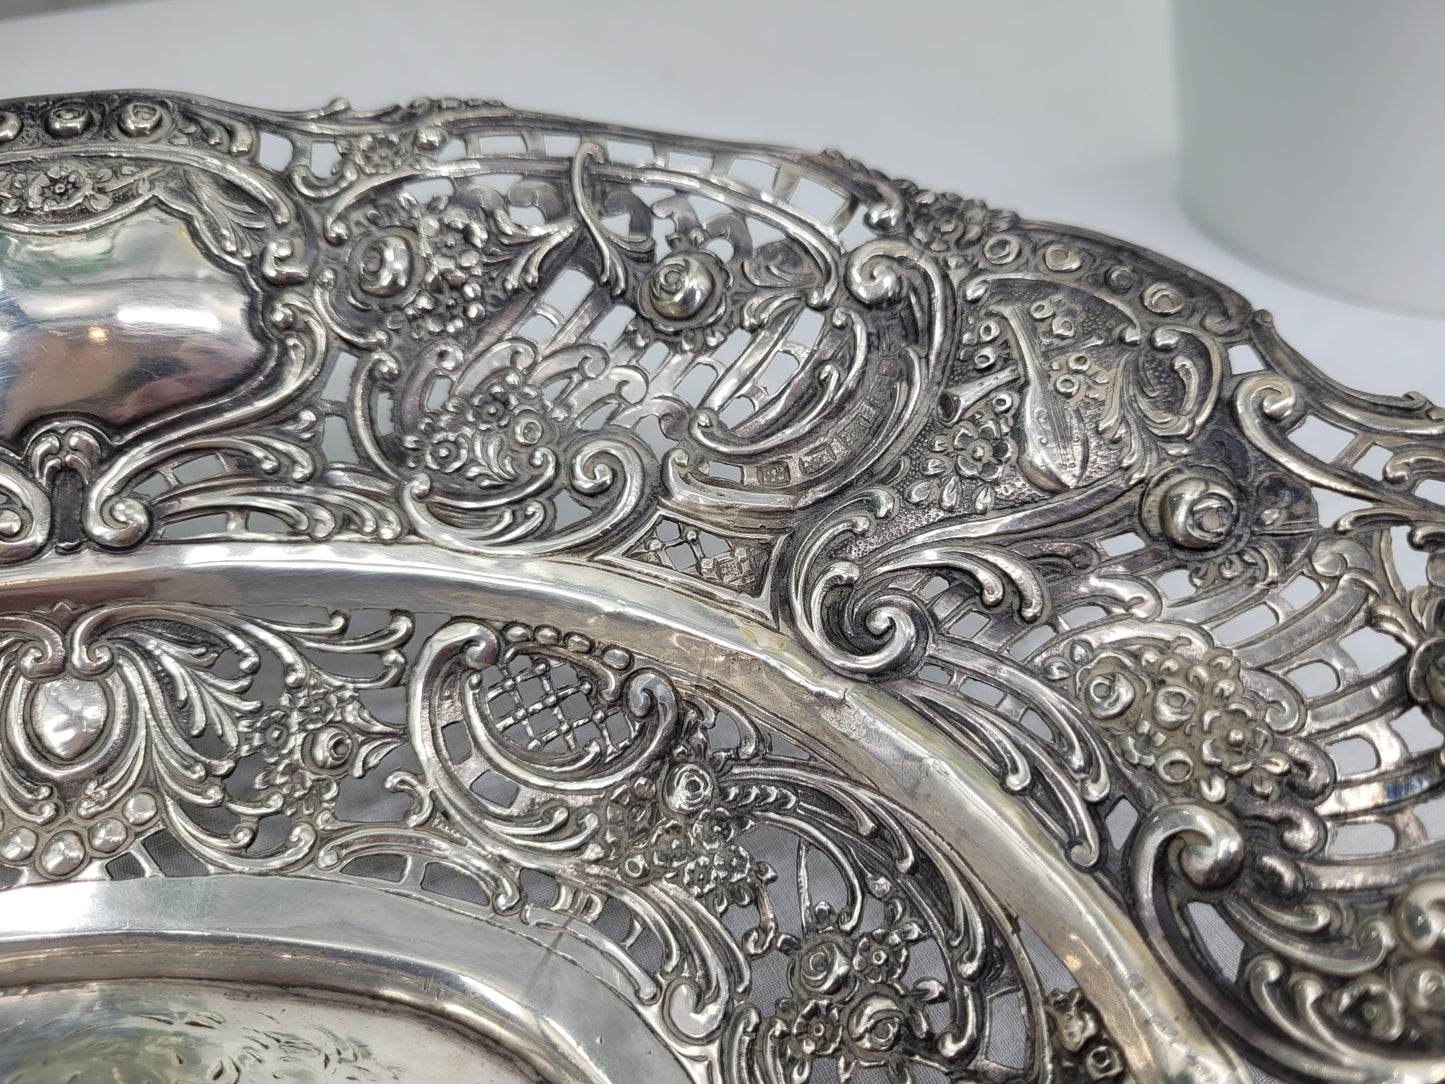 Silberschale 800er Silber mit Puttenengeln Relief und Durchbruchrand